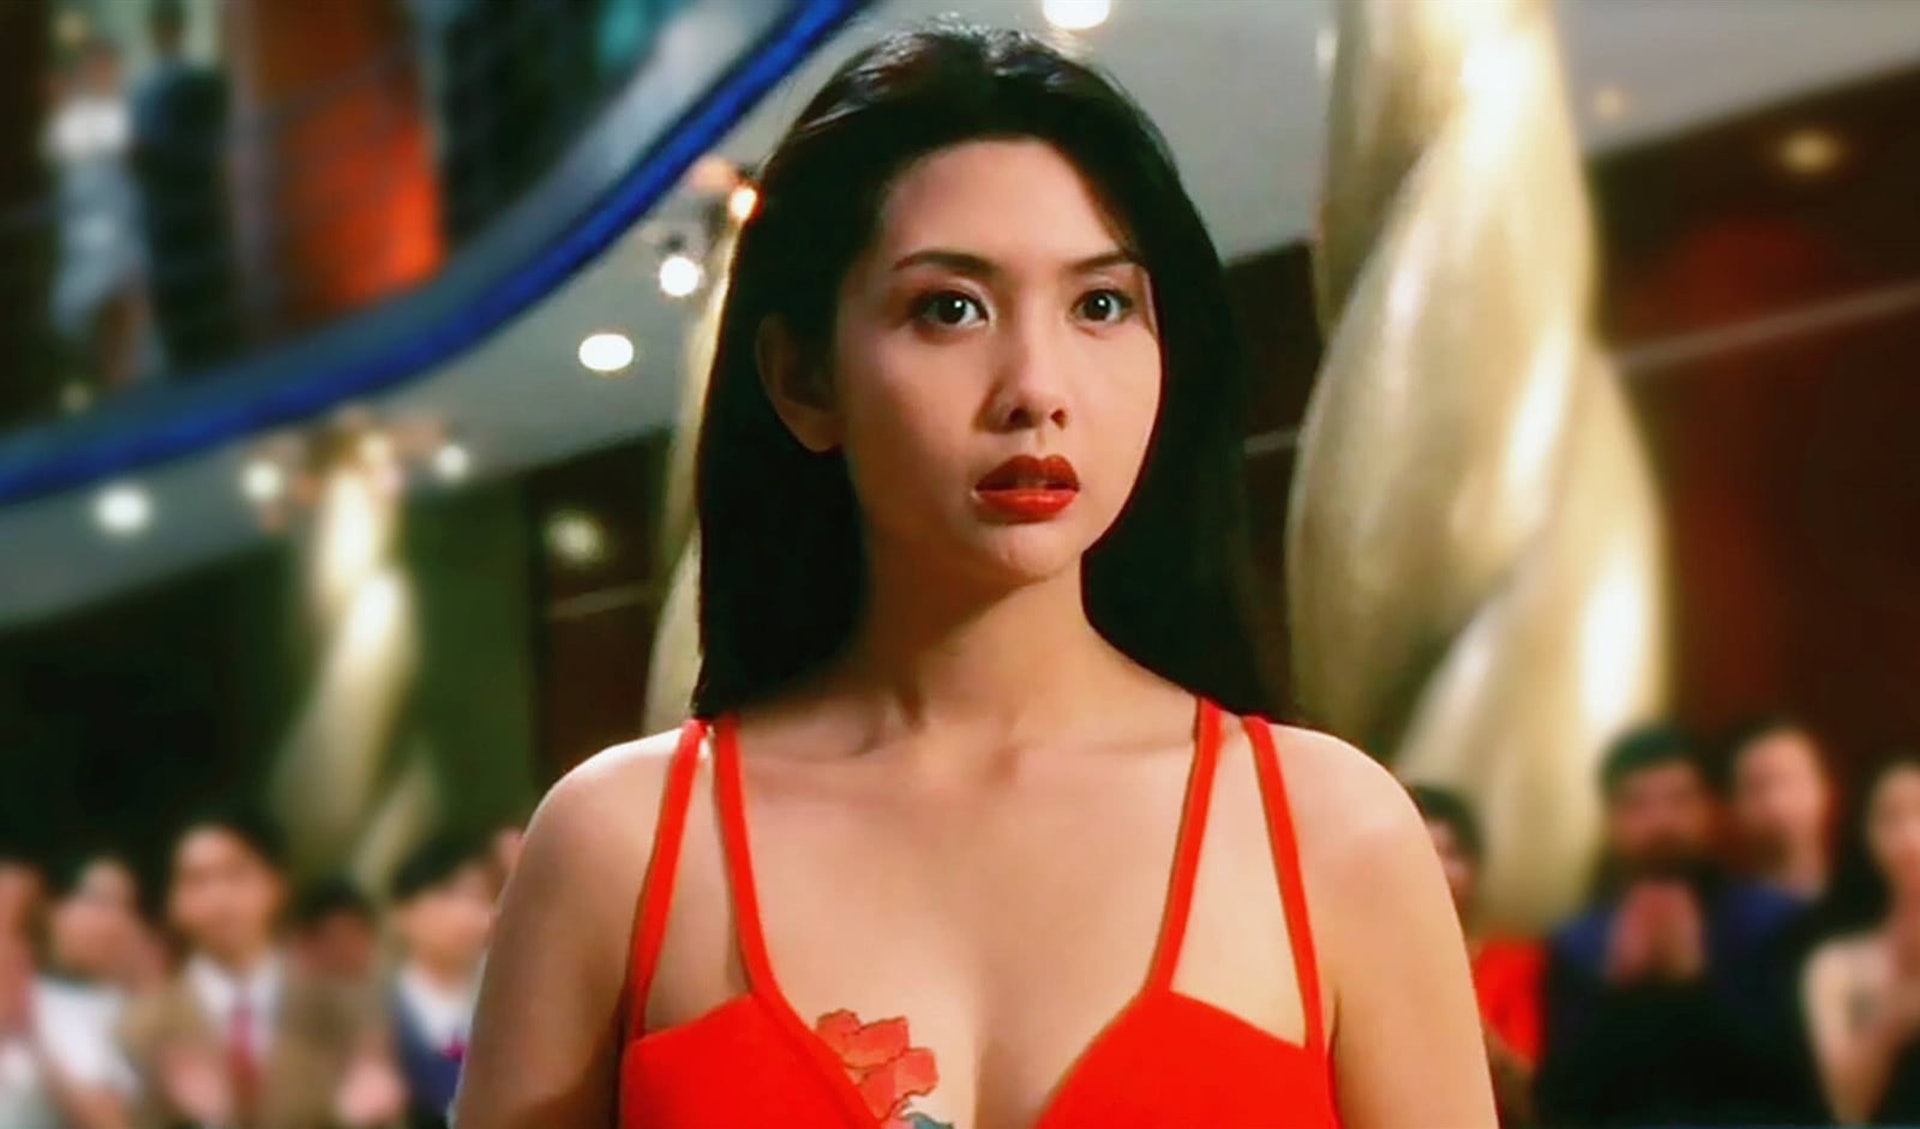 "香港最嚮往的美女"  54還能保留青春的青春風采嗎？  - 第一的